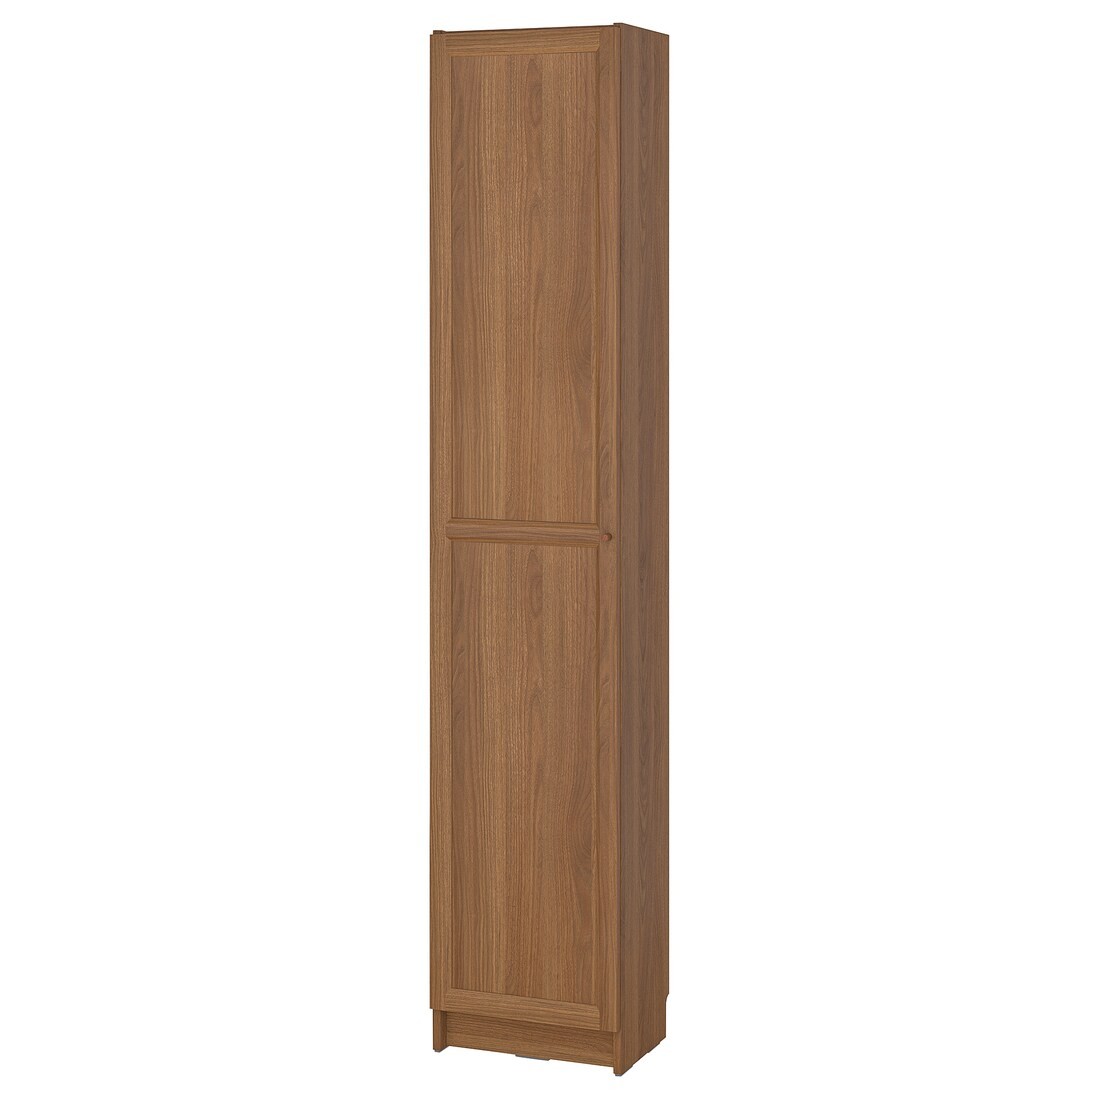 BILLY / OXBERG Стеллаж с дверями, коричневый орех, 40x30x202 см